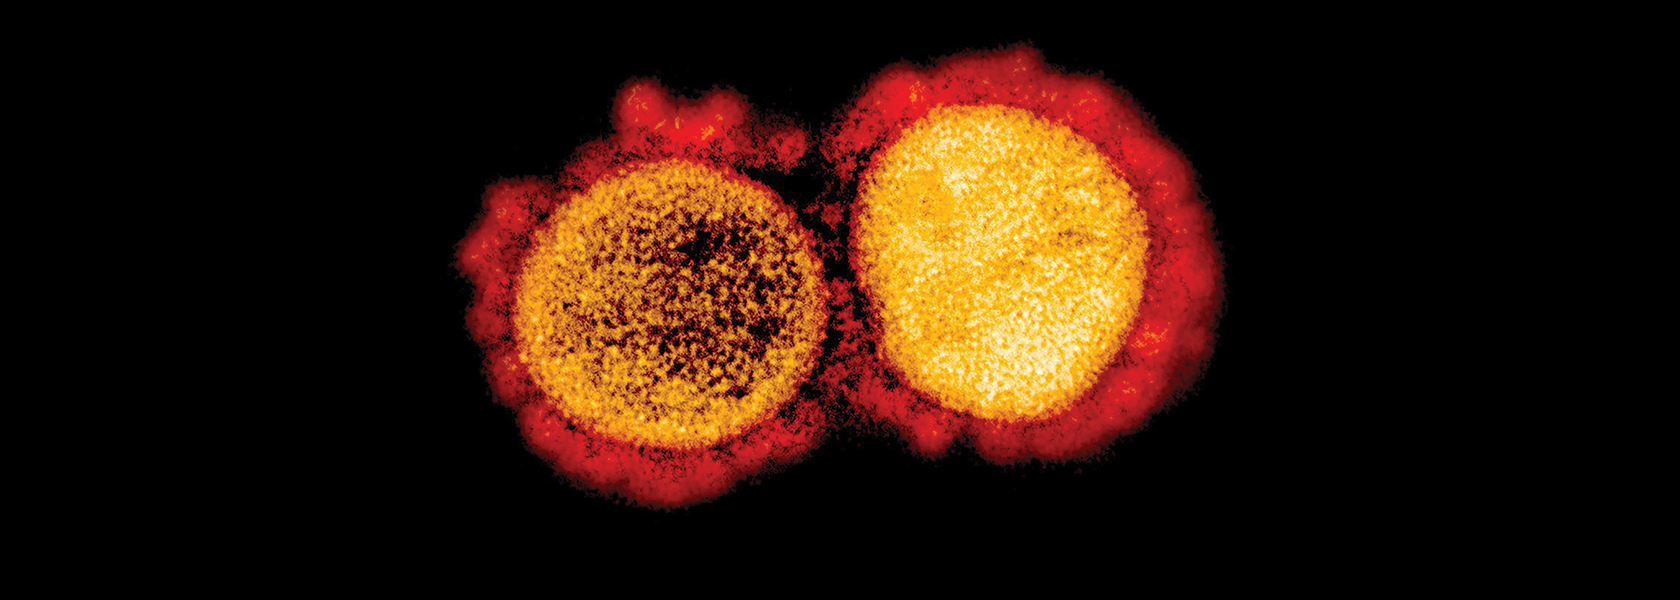 Image of a coronavirus virus strain